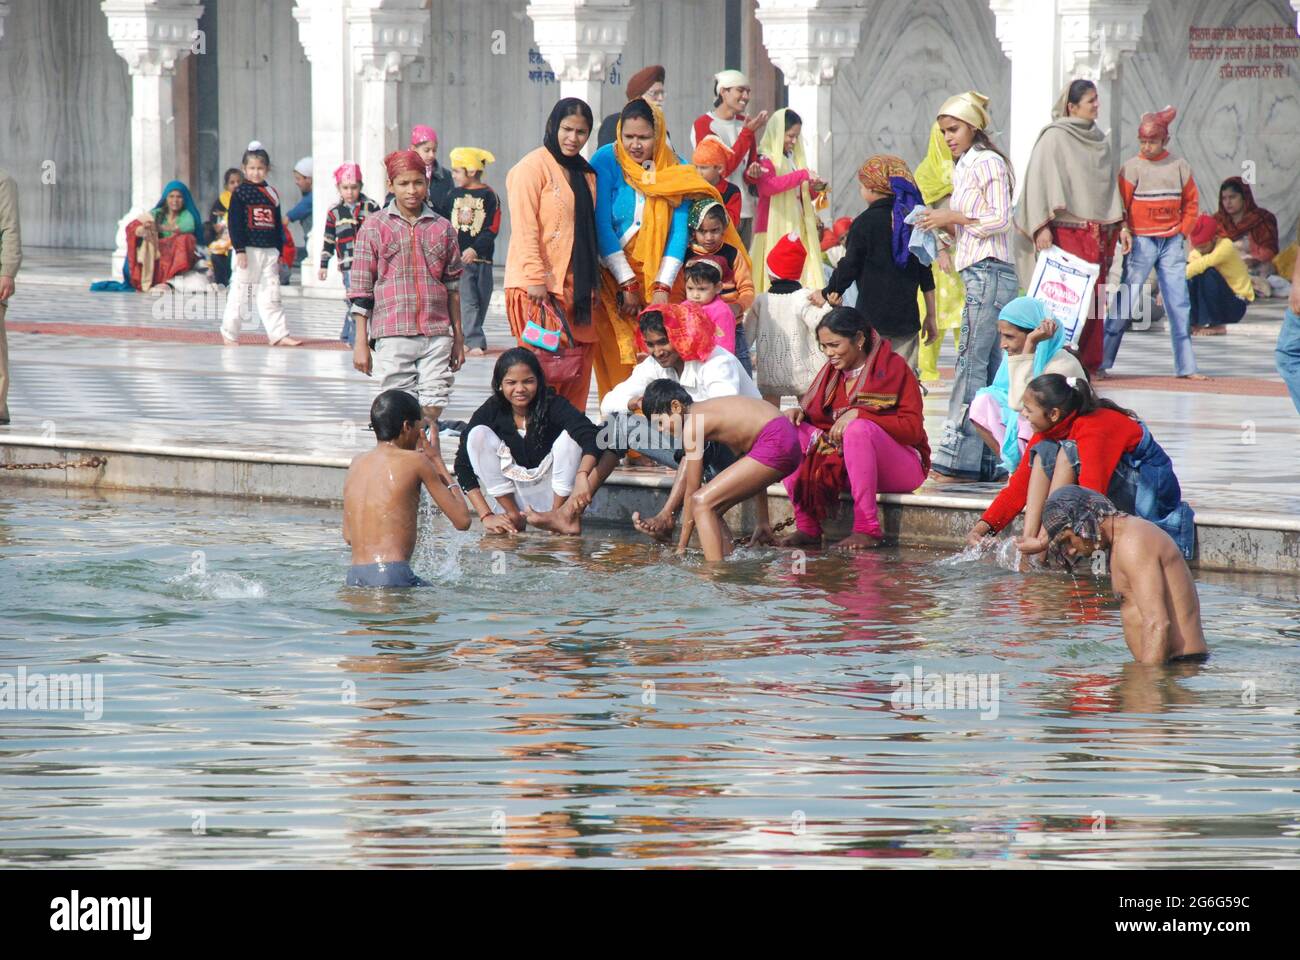 Ceremonia ritual de purificación de baño, India, Delhi Fotografía de stock  - Alamy